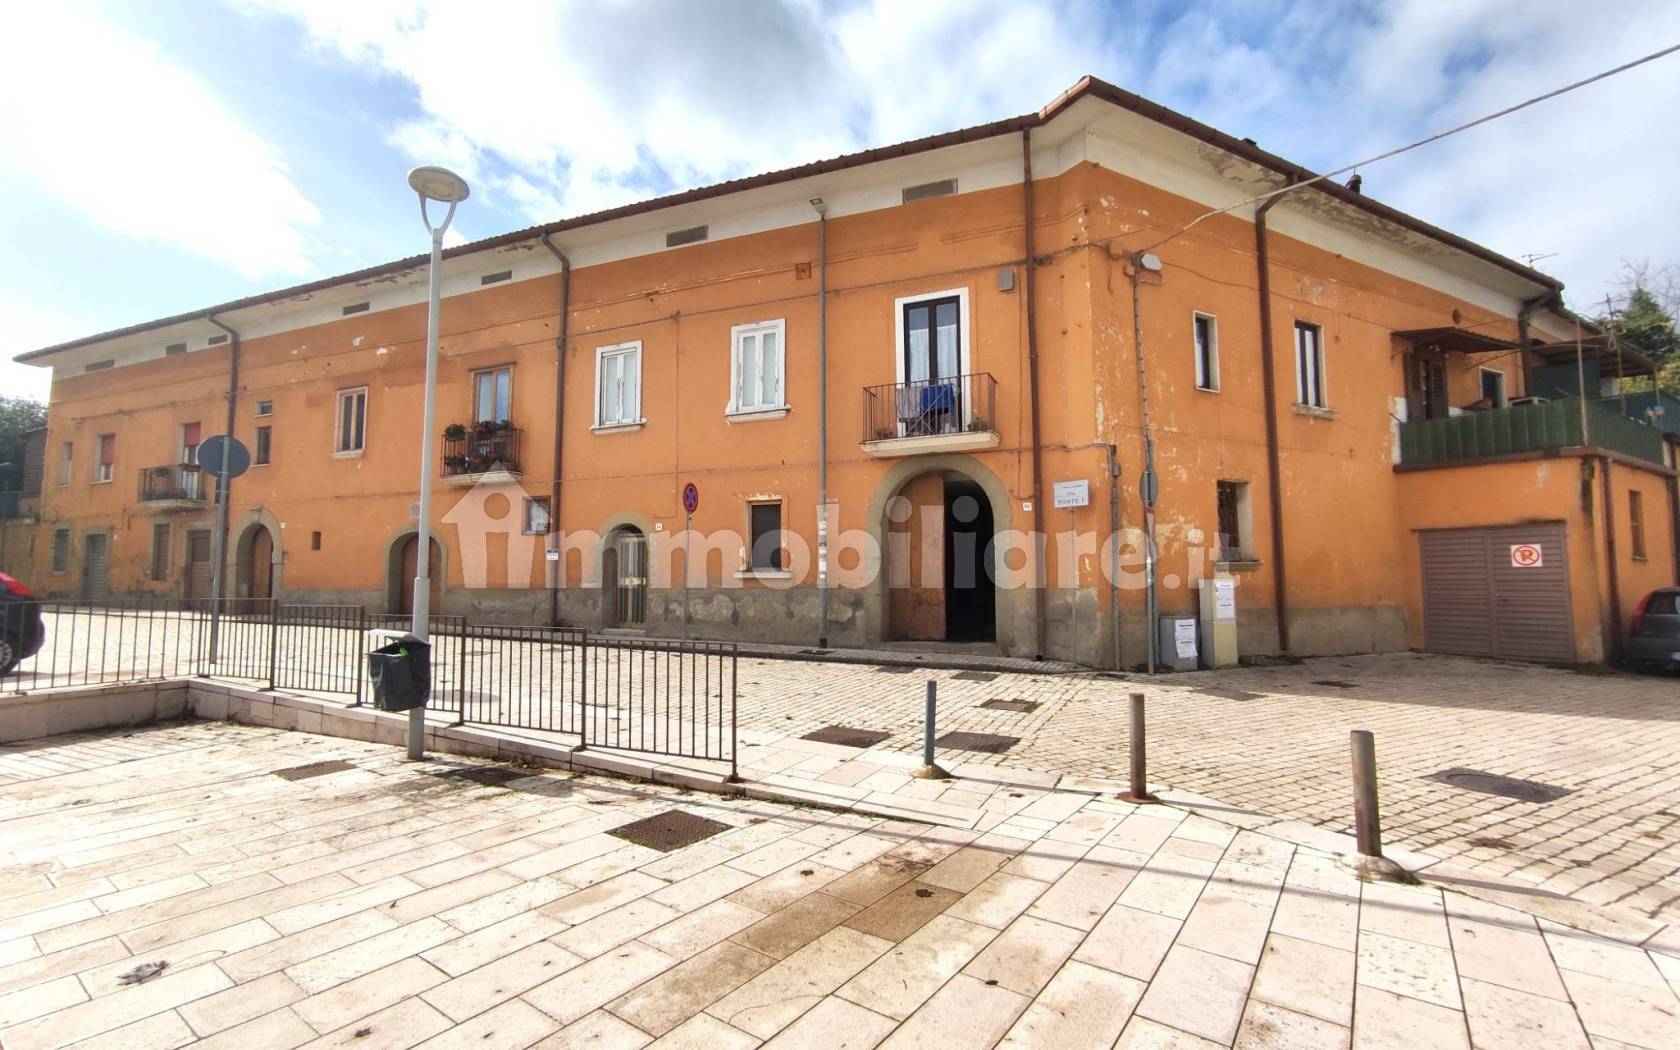 Palazzo - Edificio via Ponte 1 76, Valle, Pennini, Sant'Eustachio, Avellino